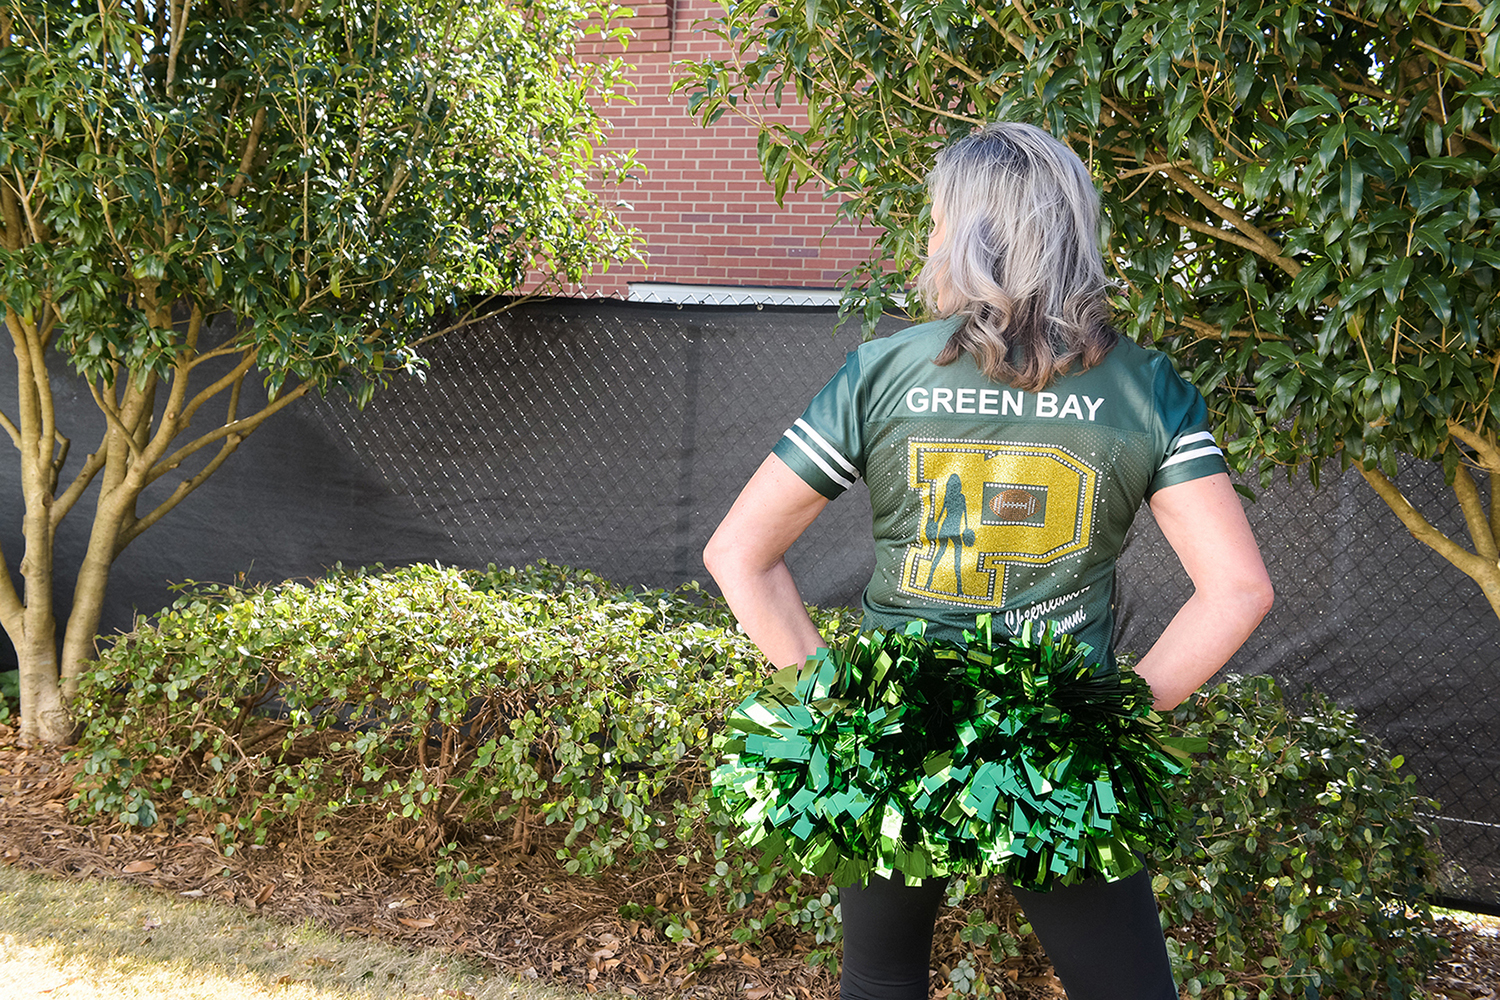 Margaret Schell with Green Bay Packer Cheerleader jersey